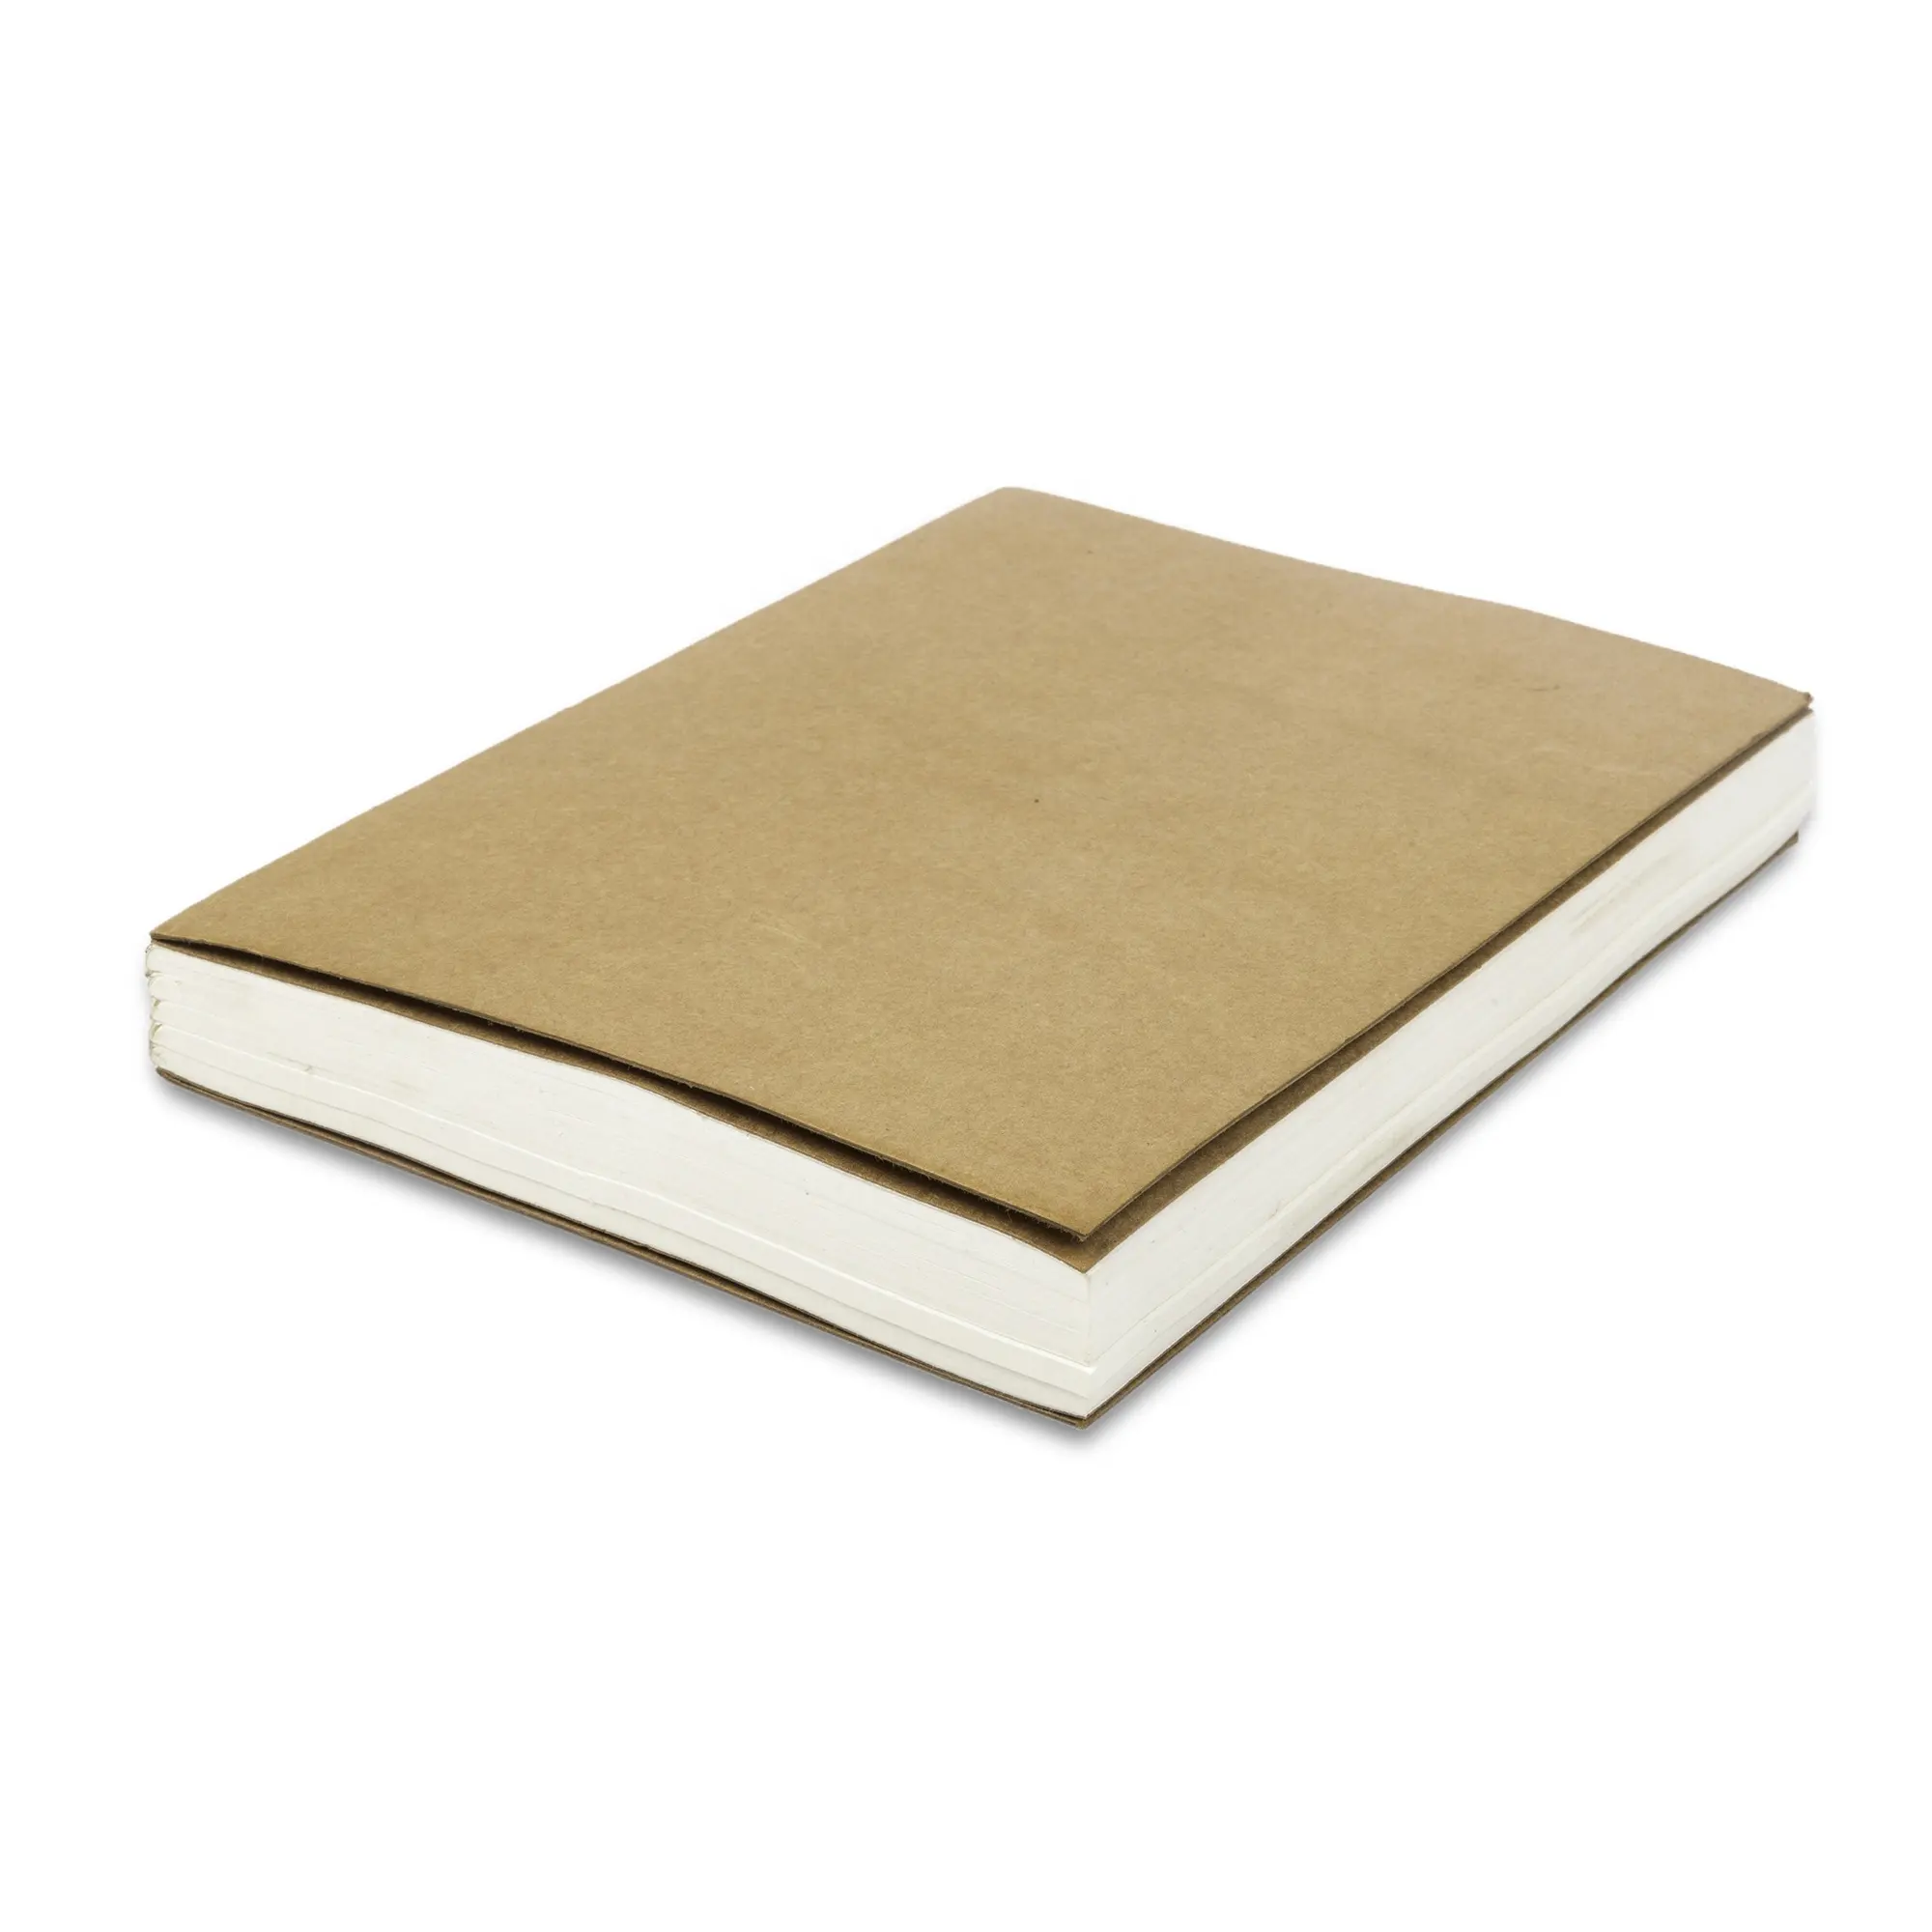 เติมกระดาษผ้าฝ้ายด้วยมือขนาด A5กระดาษมีเส้นหรือกระดาษไม่มีเส้นสำหรับวารสารและสมุดโน๊ตหรือรีฟิลสำหรับวารสารหนัง